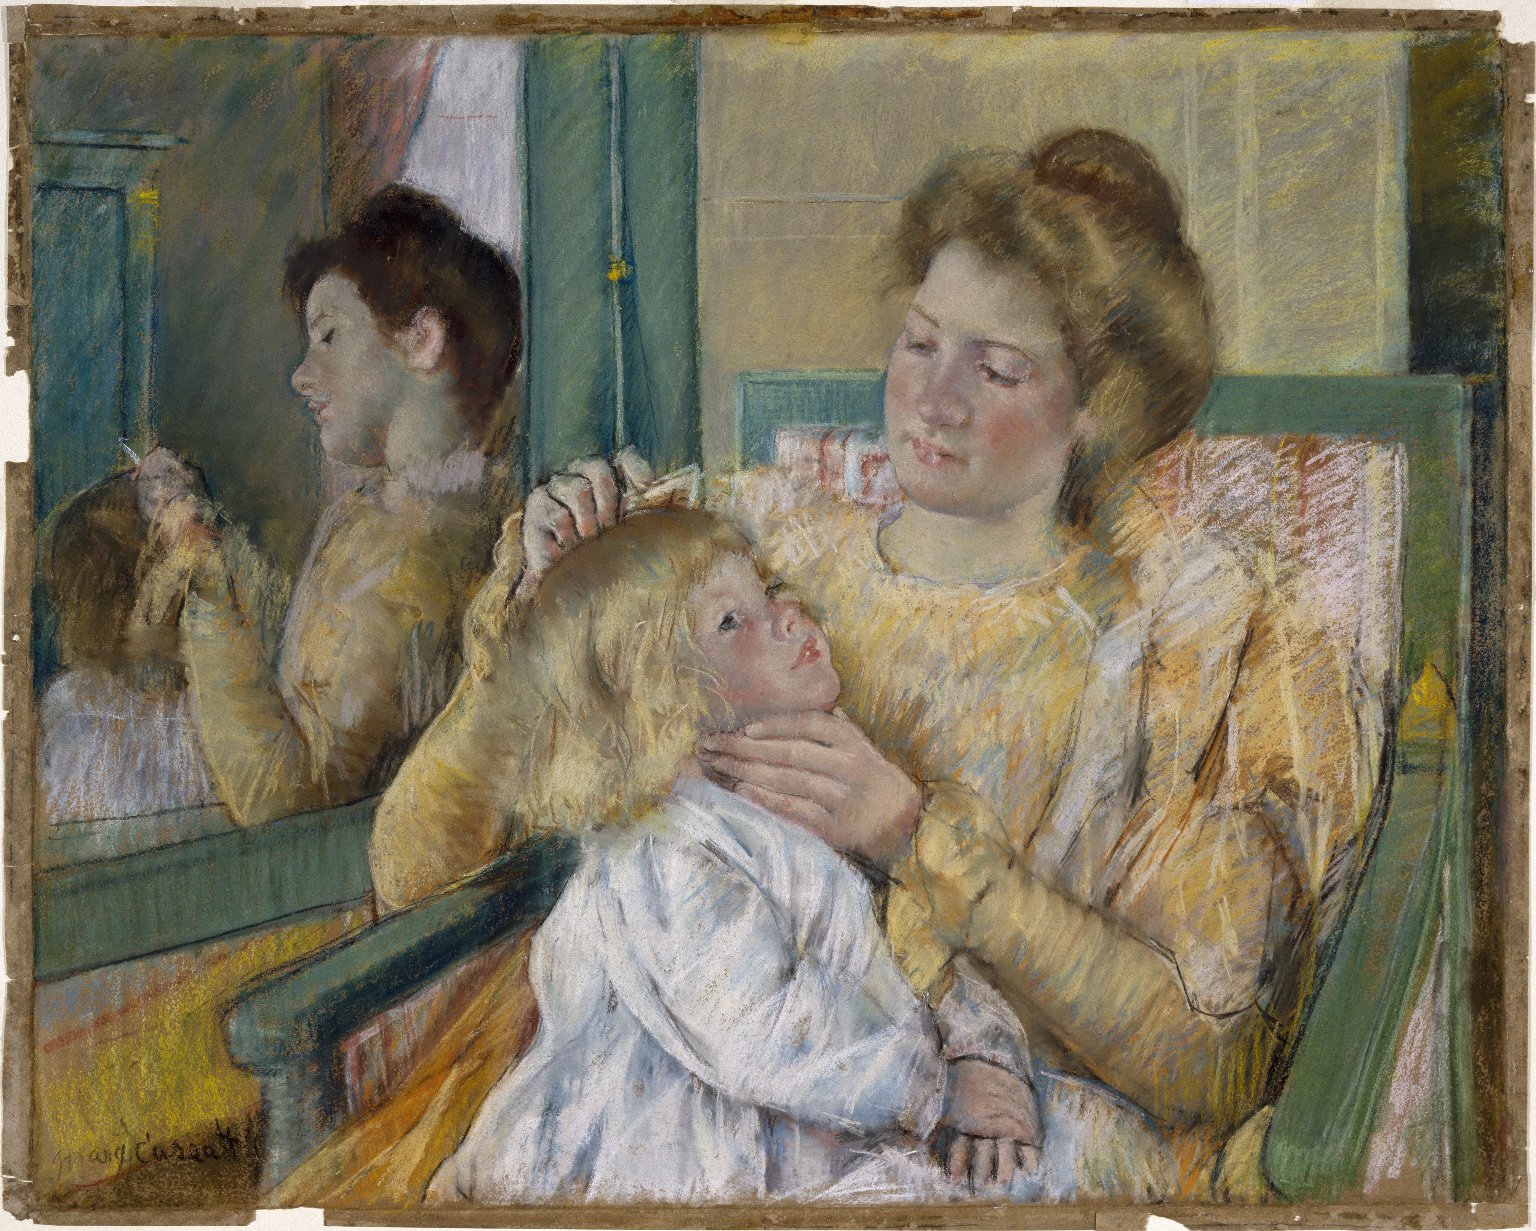 Moeder kamt het haar van haar kind by Mary Cassatt - 1901 - 64.1 x 80.3 cm 